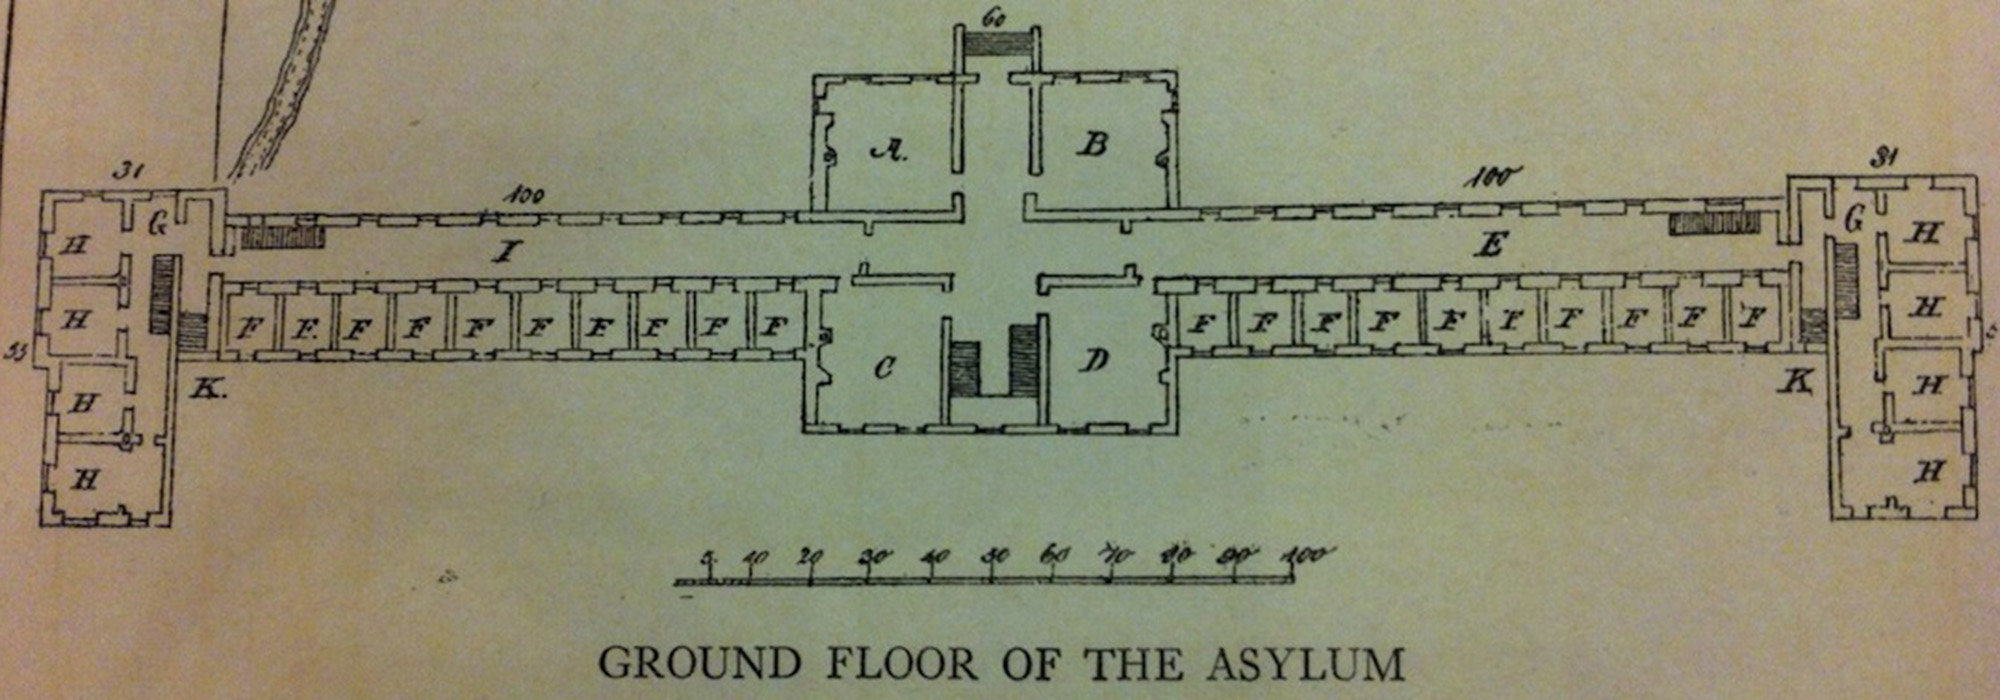 asylum floor plan